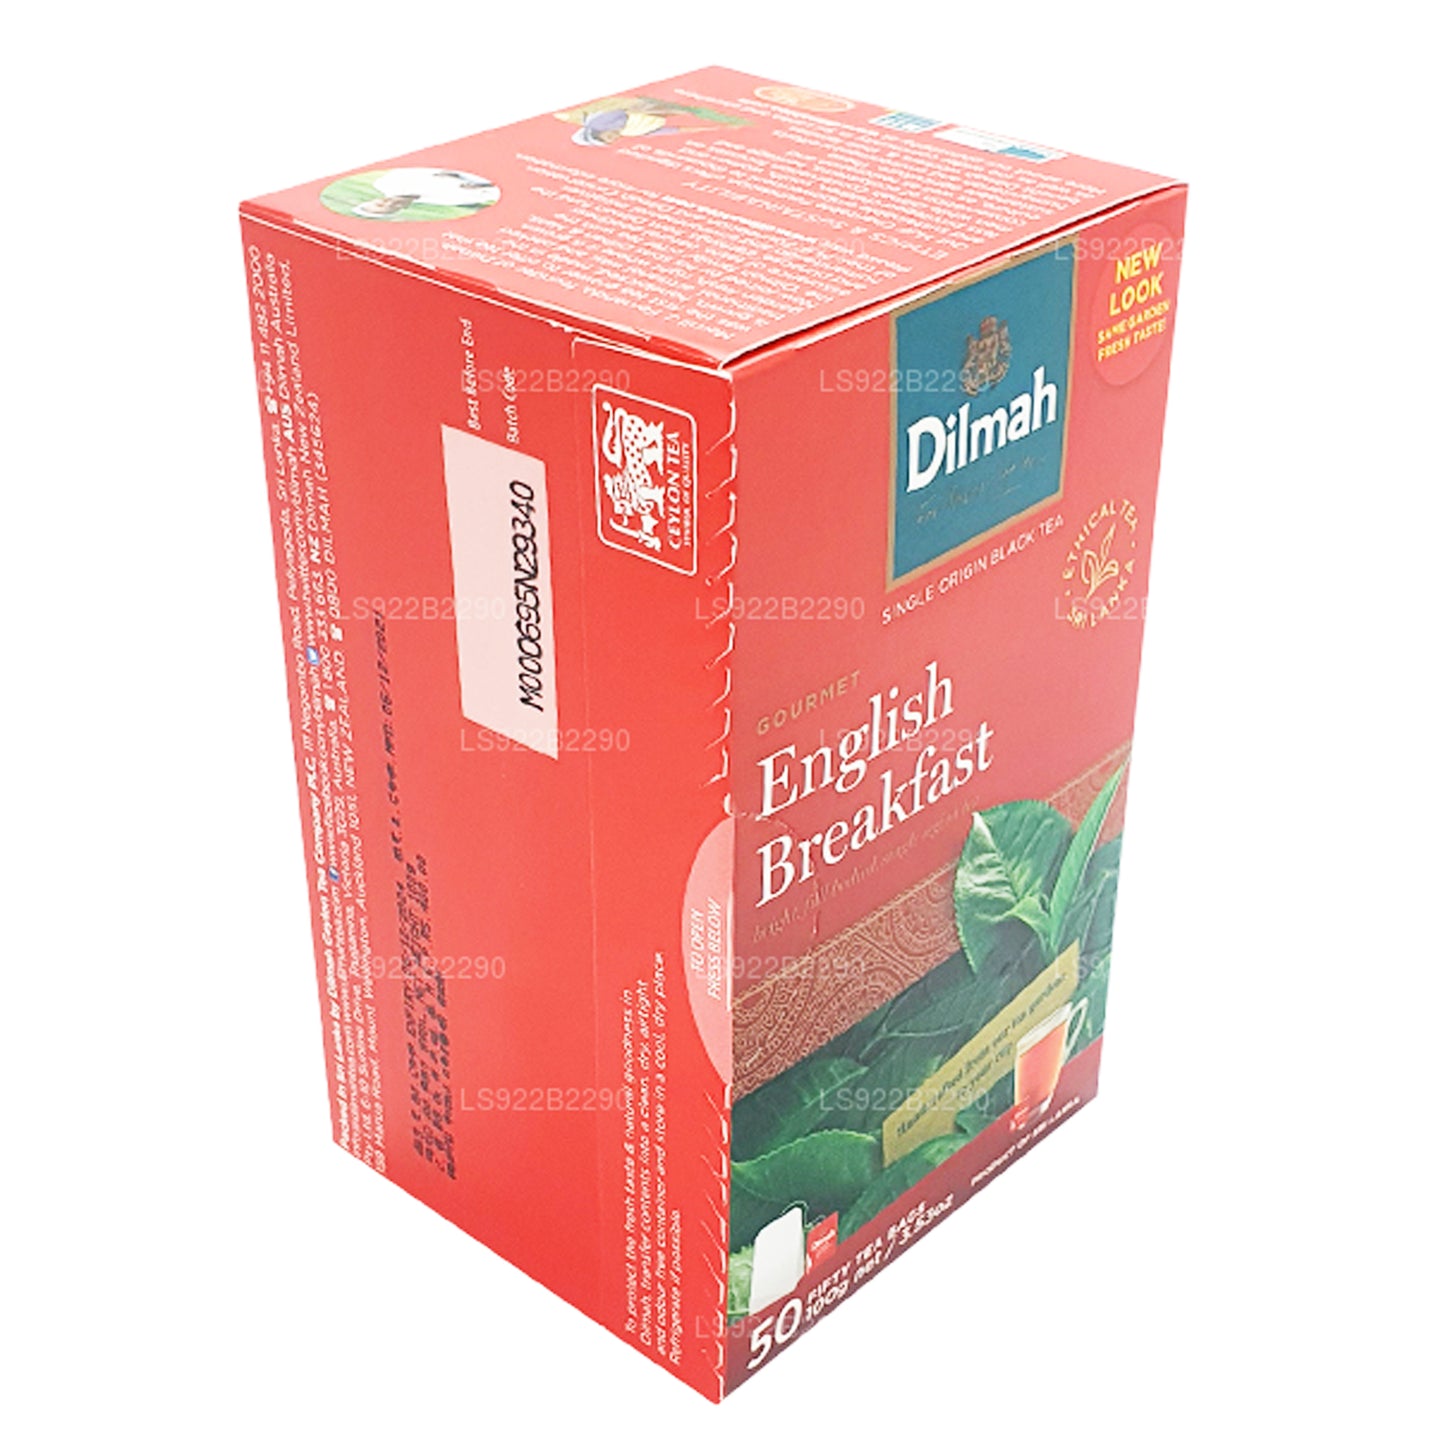 Thé anglais Dilmah pour petit déjeuner, 50 sachets de thé (100 g)